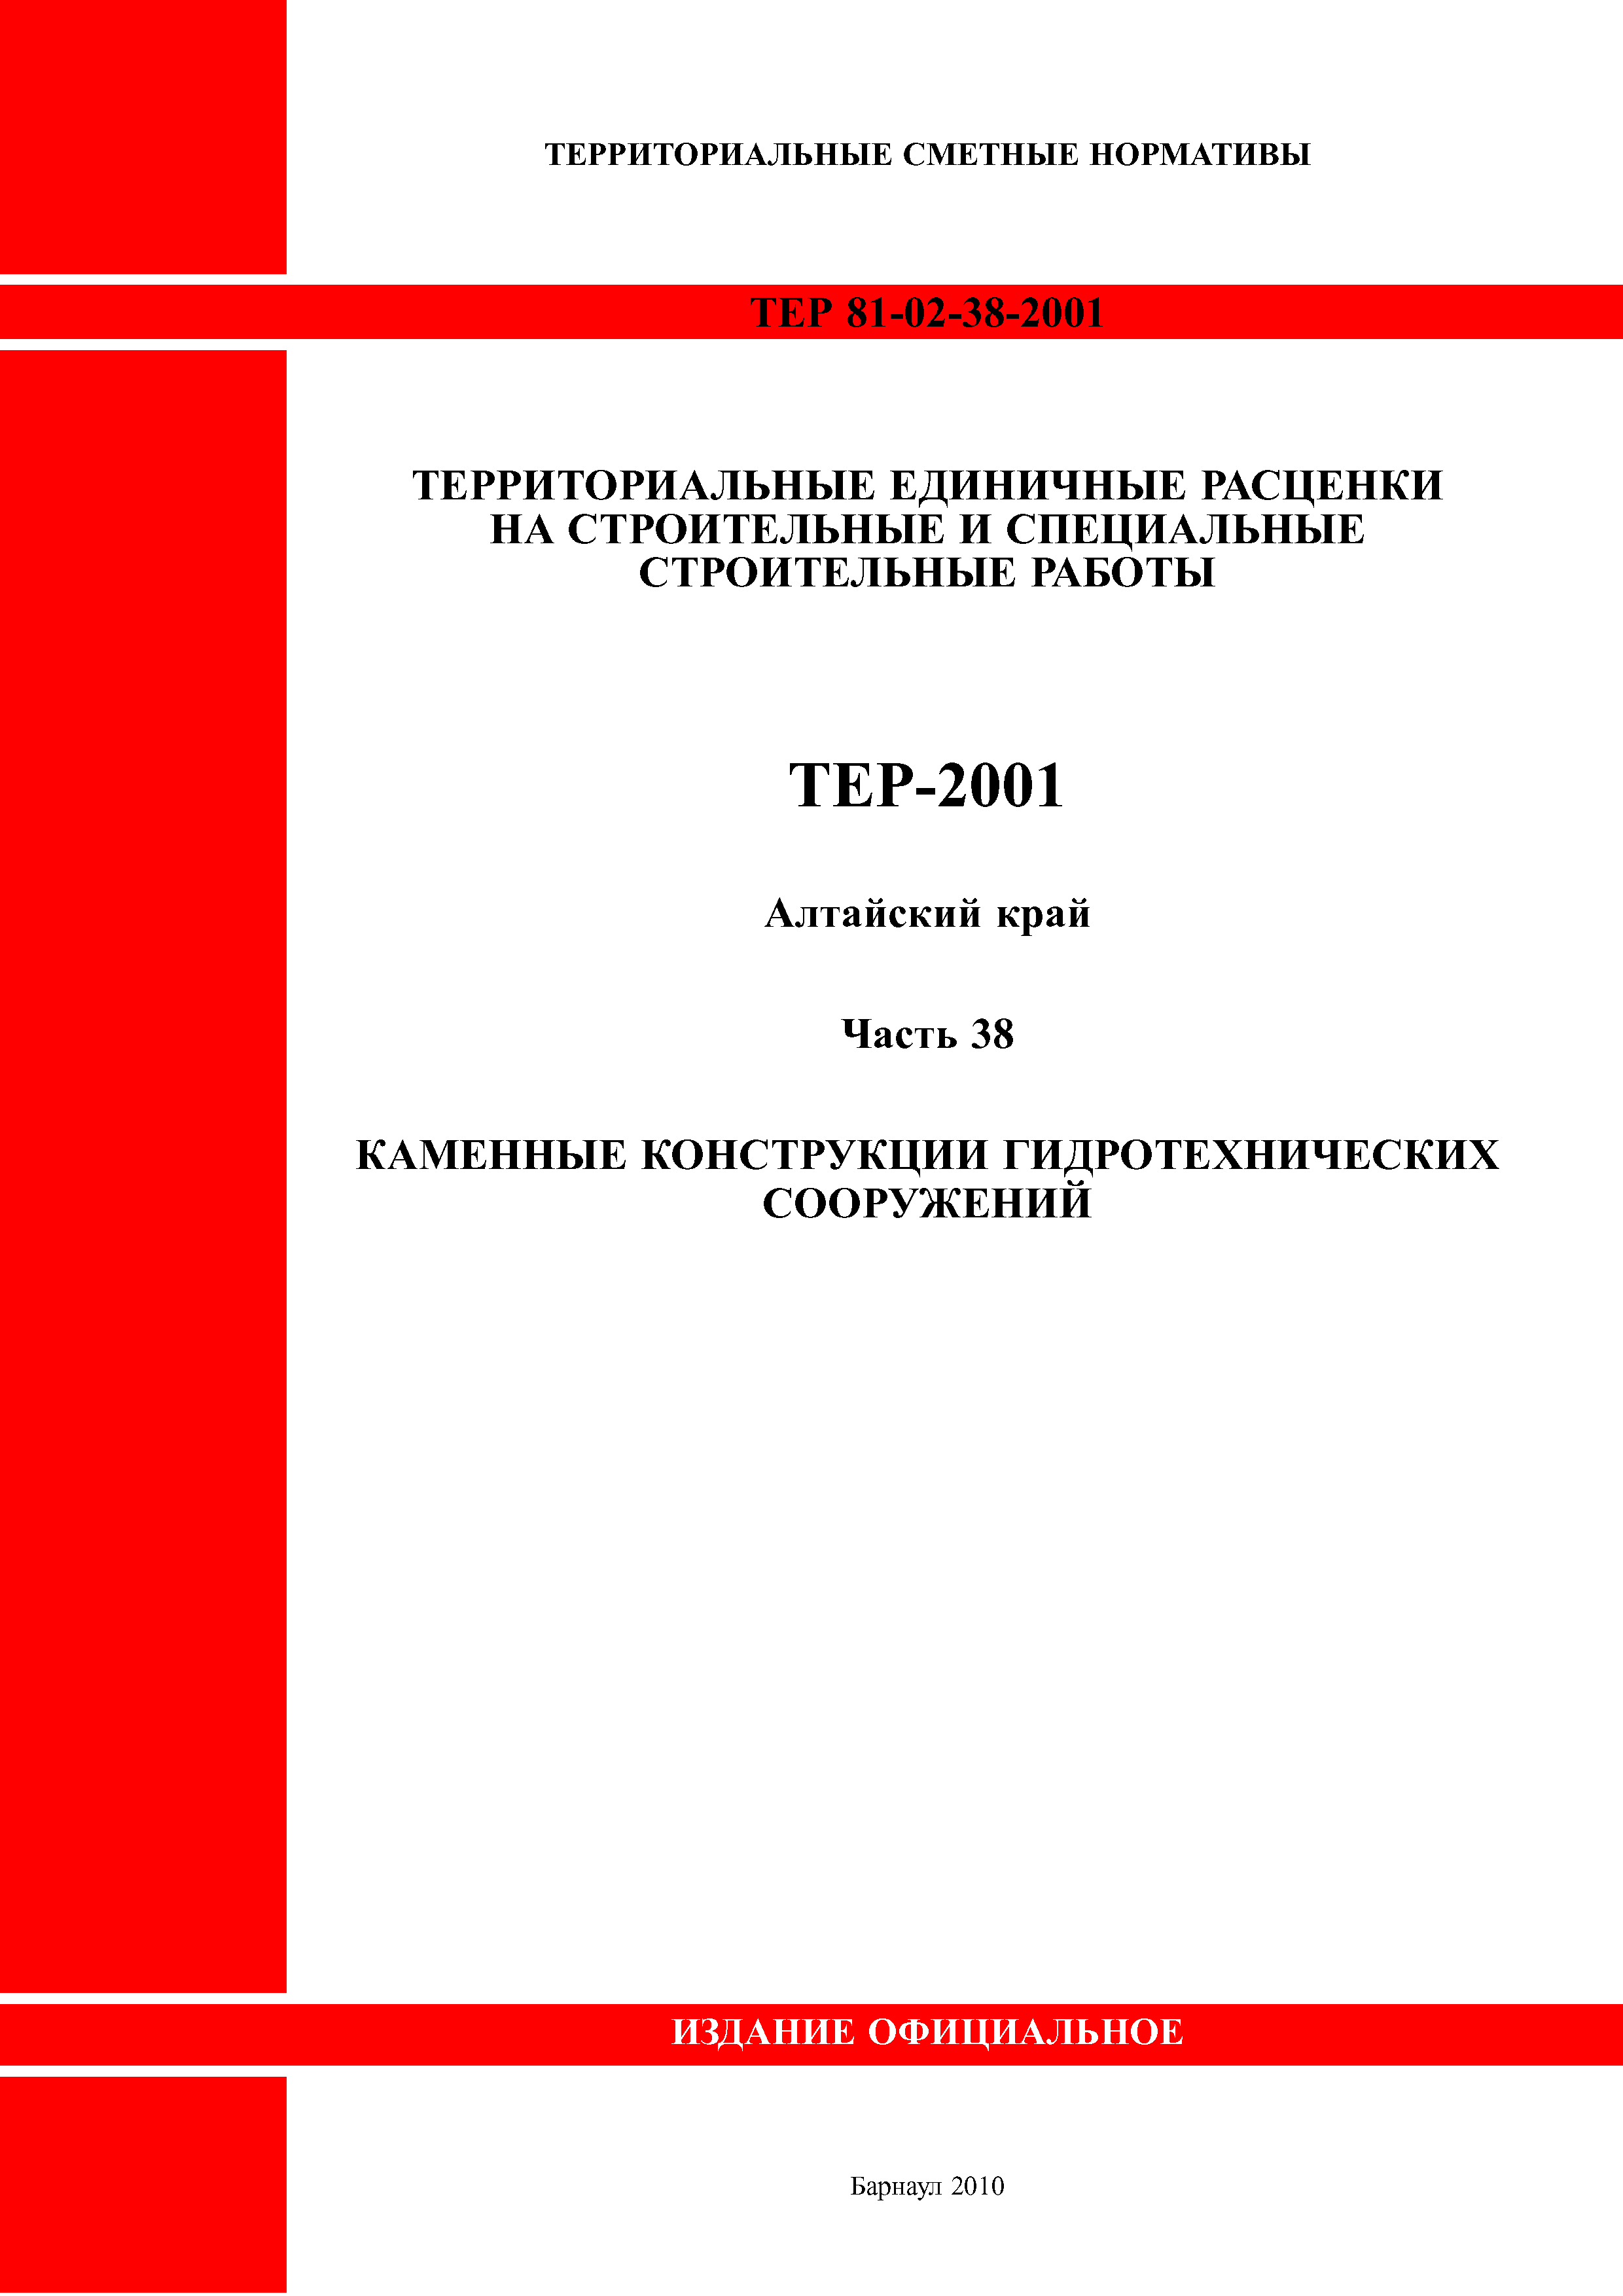 ТЕР Алтайский край 2001-38